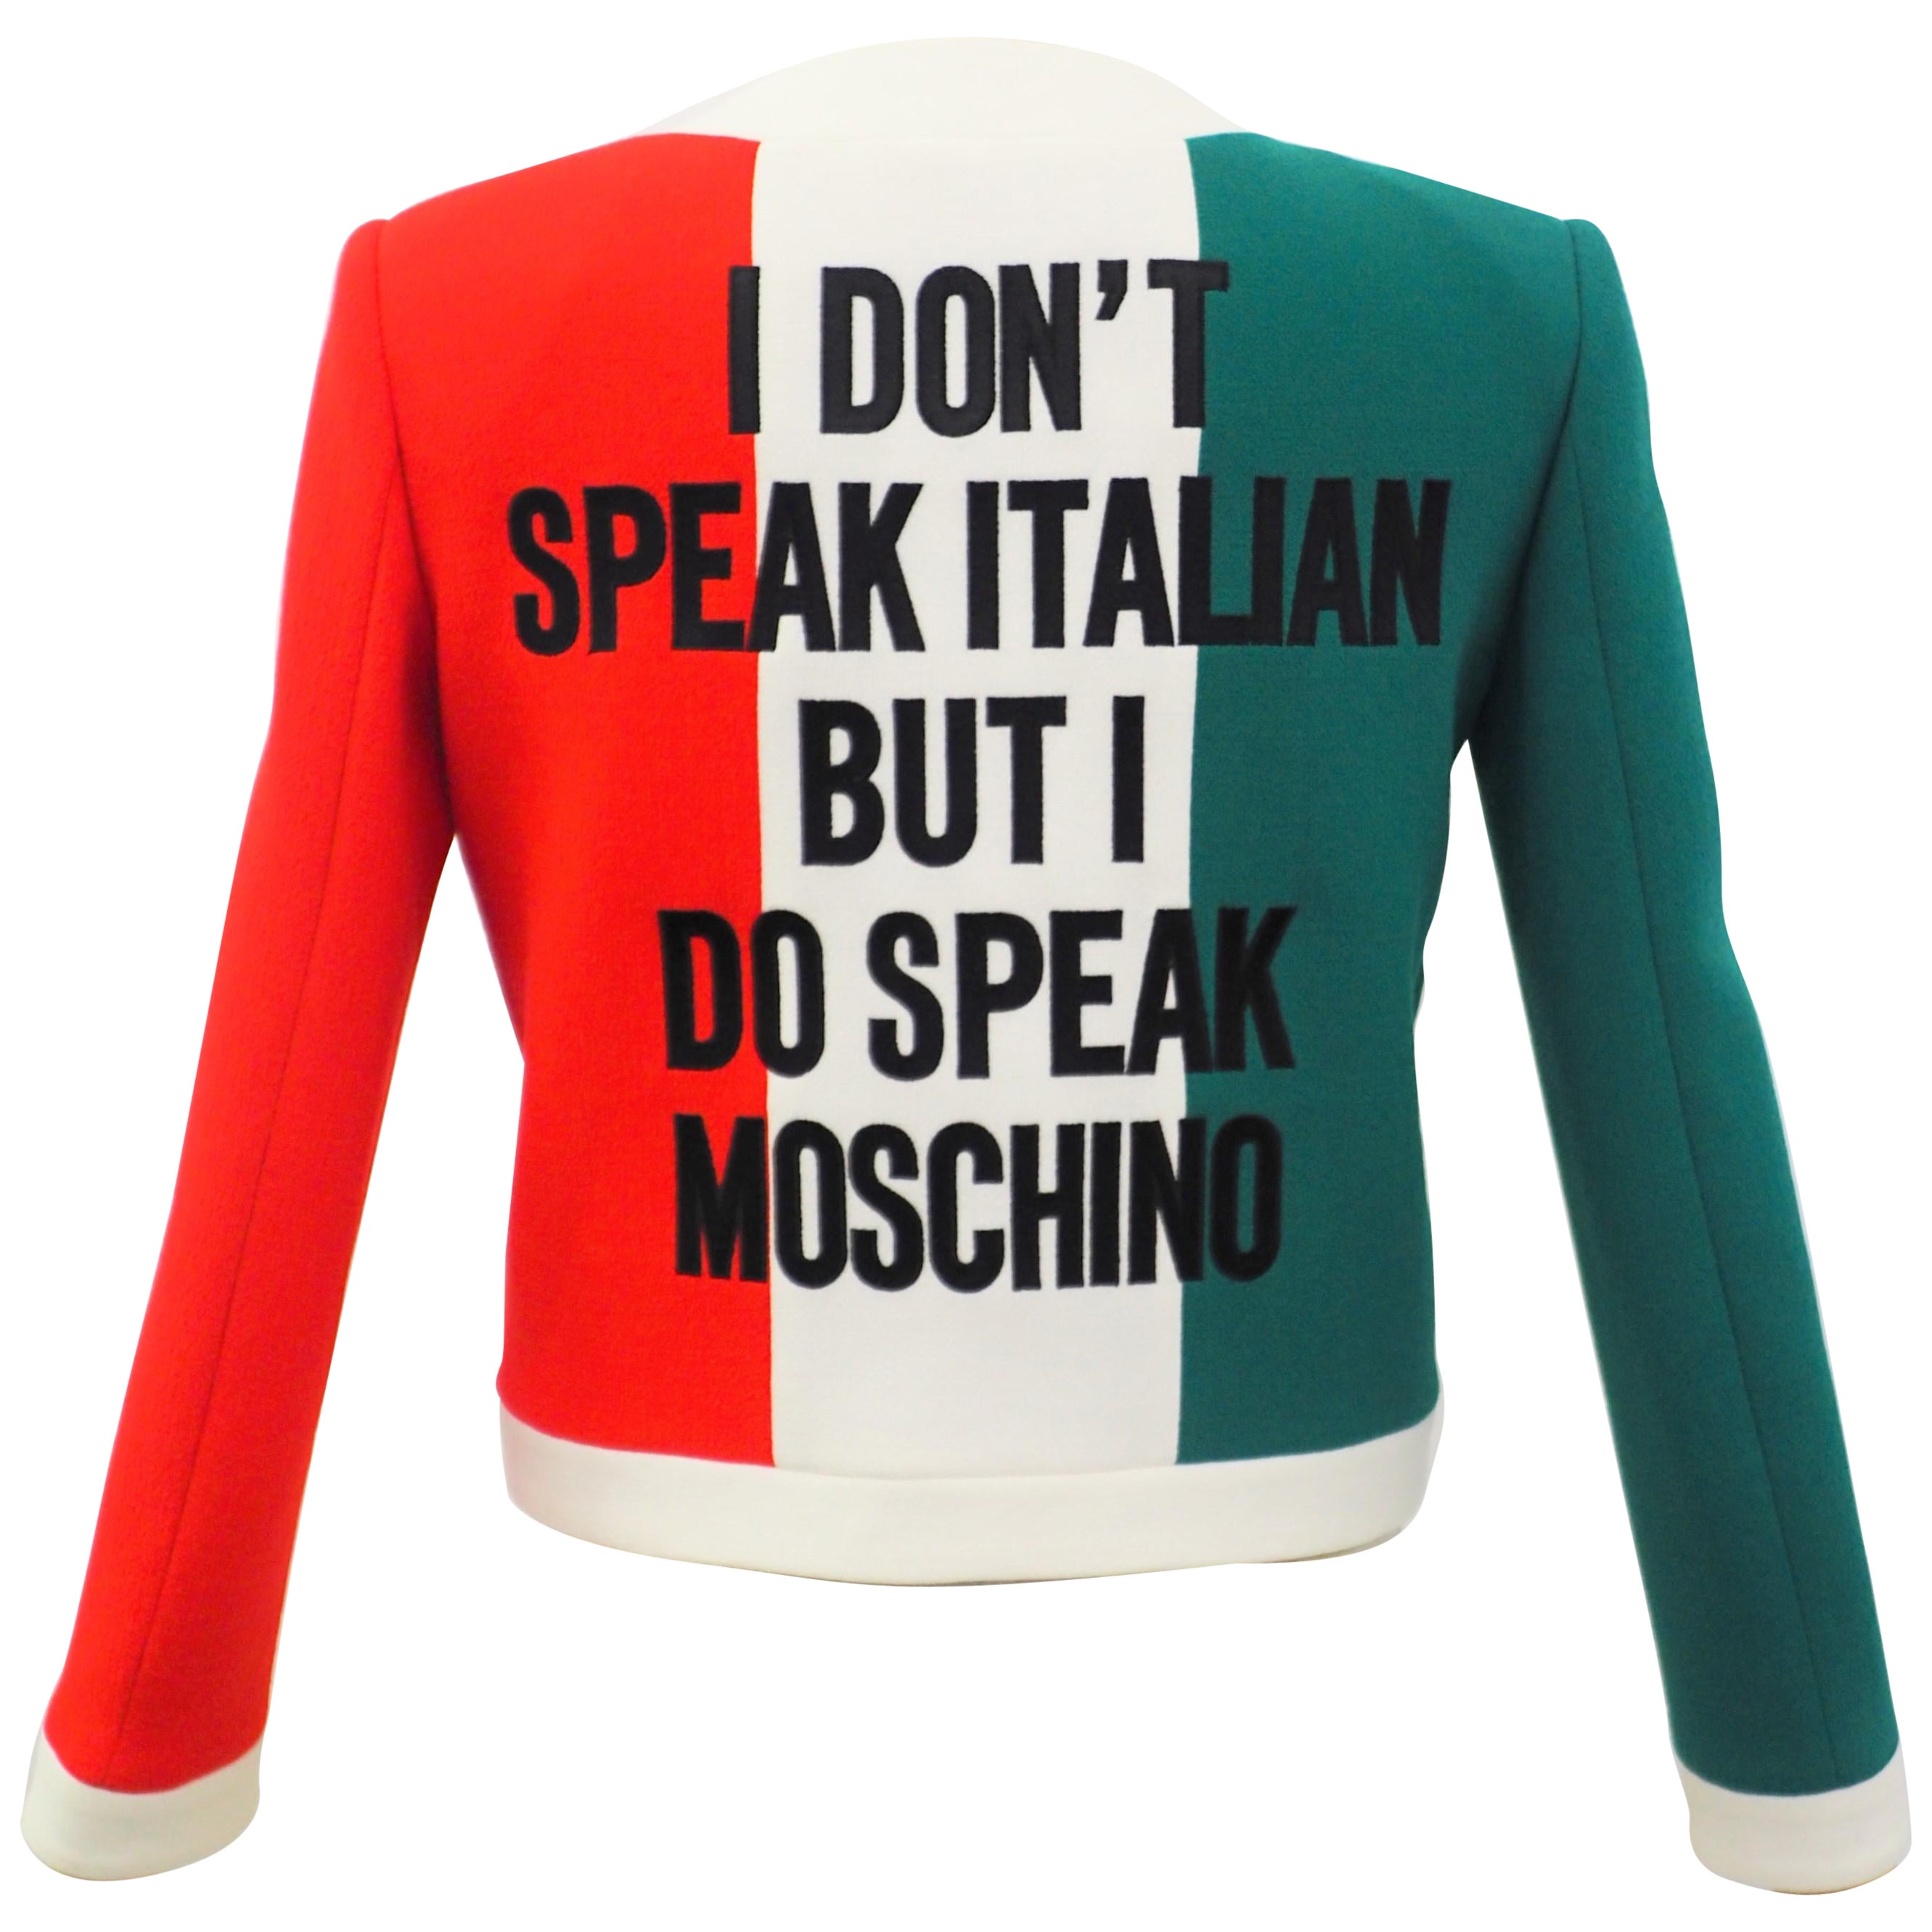 Moschino „Ich spreche nicht Italienisch, aber ich spreche Moschino“ Italienische Flaggenjacke, neu mit Etikett